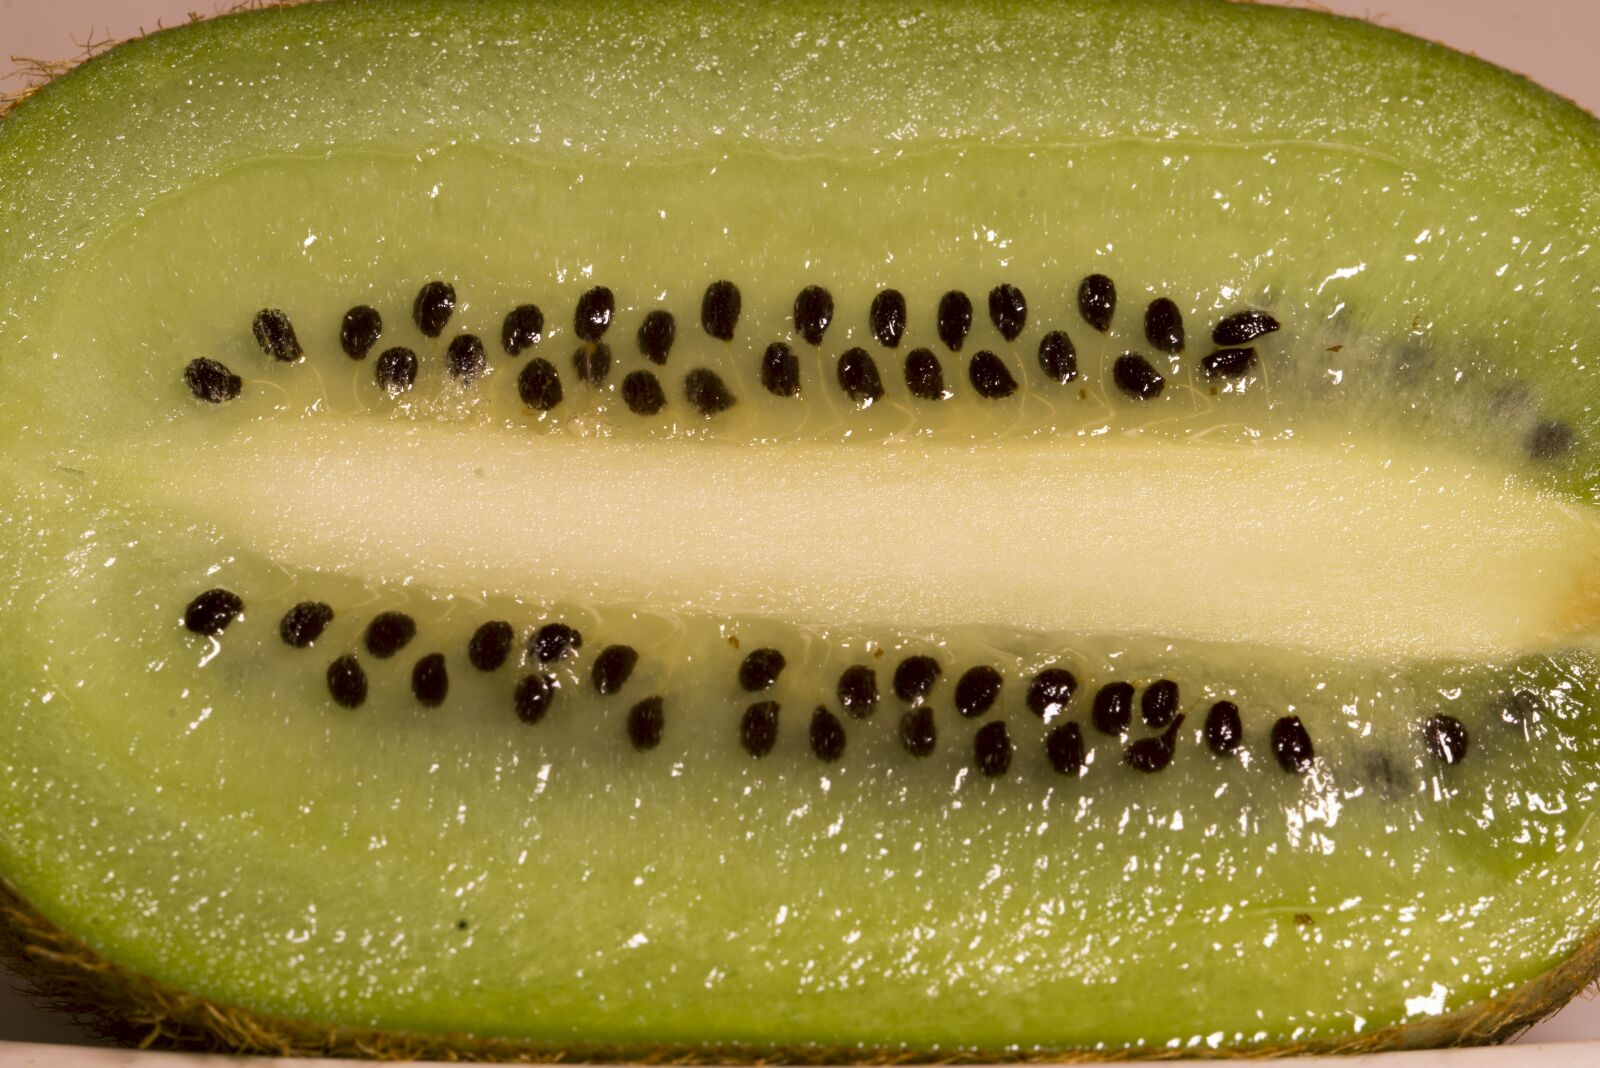 Pentax K-1 sample photo. "Kiwi, fruit, fruits" photography